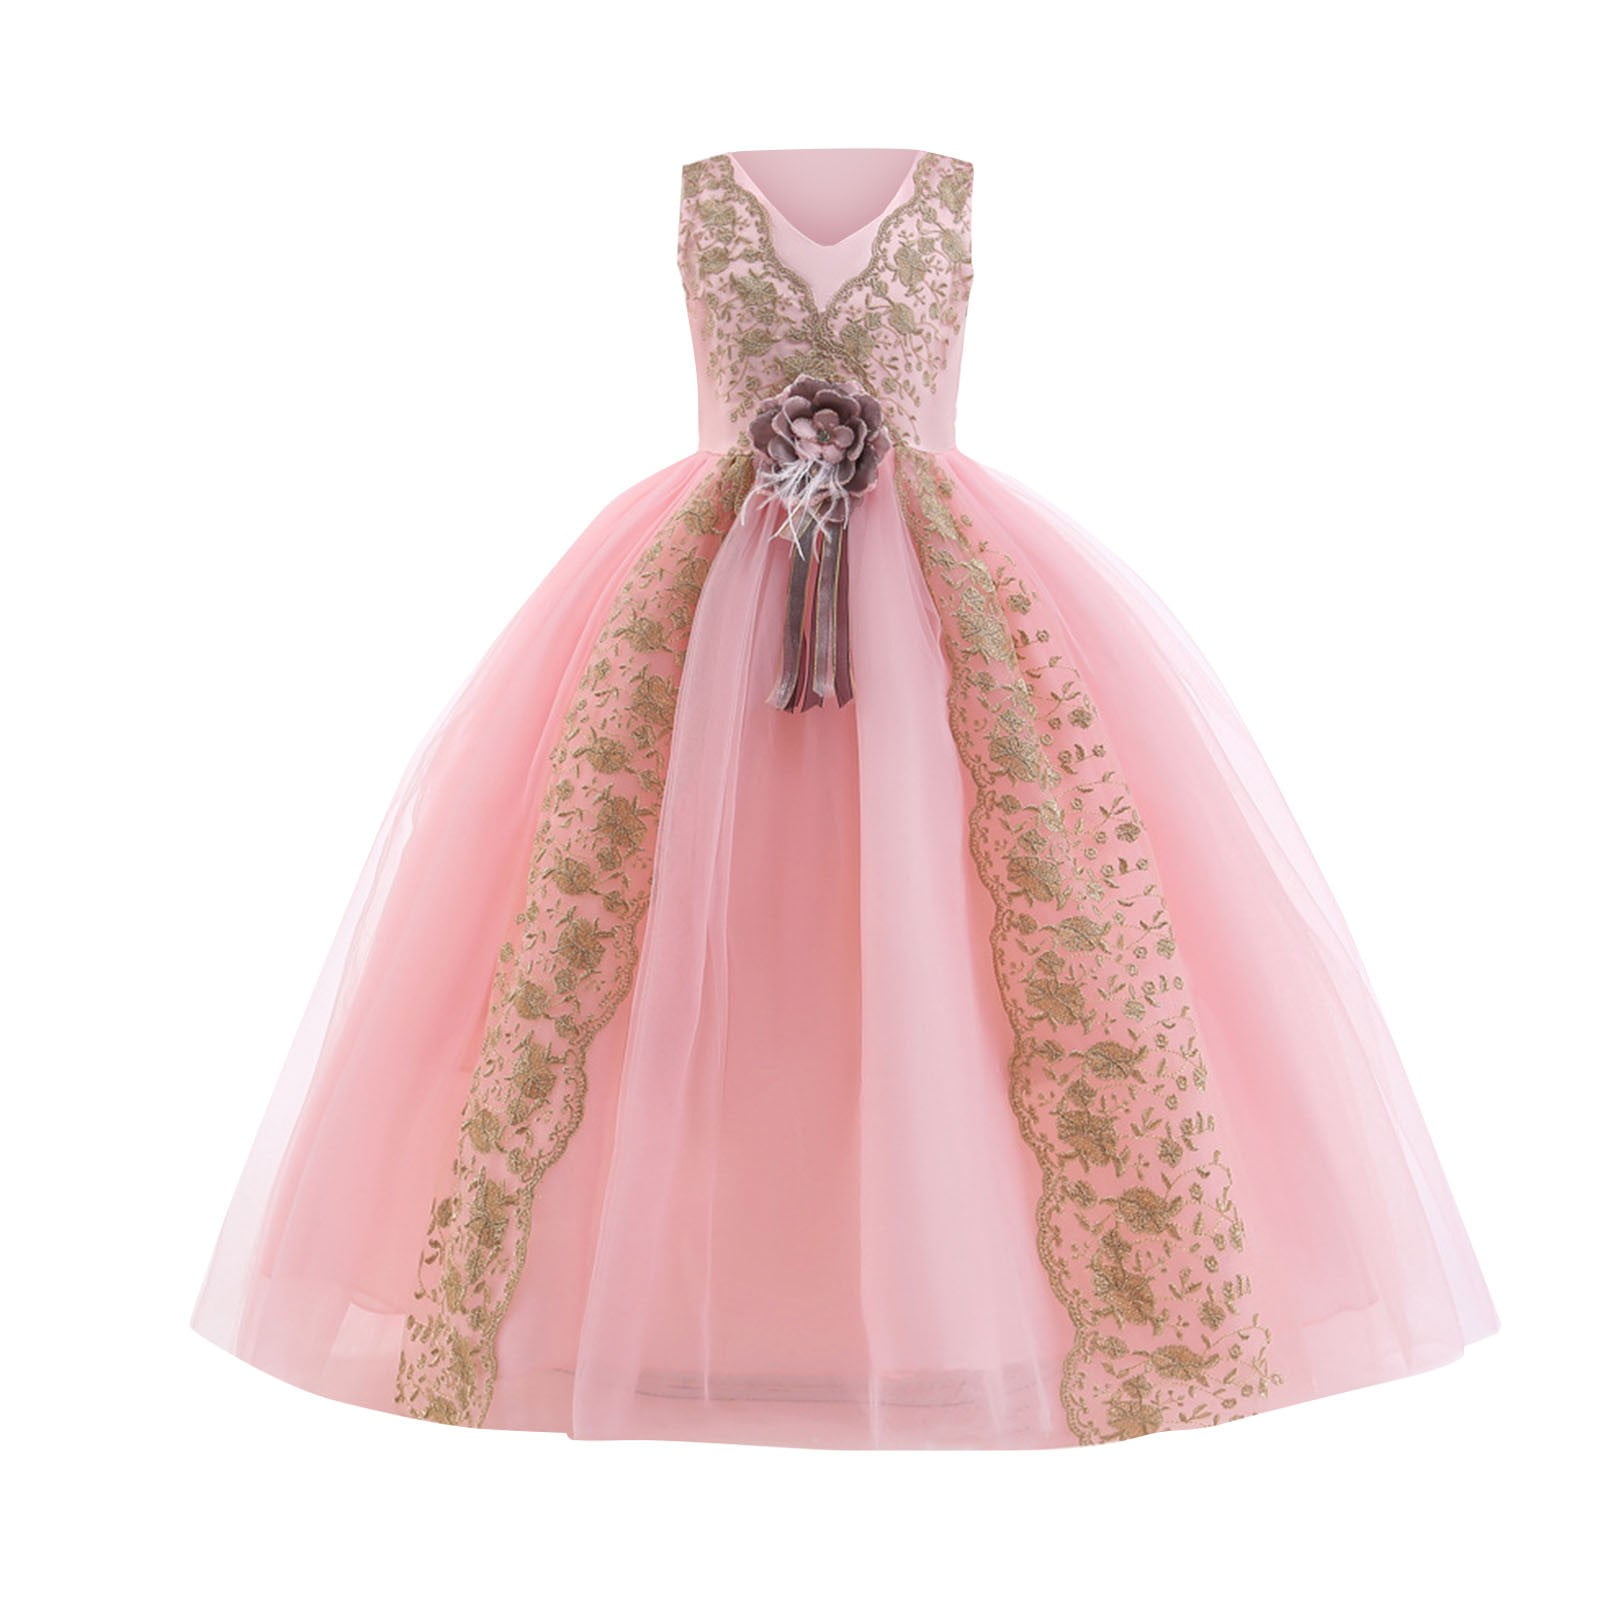 kpoplk Girls' Dresses, Children Princess Girl Dress for Wedding ...